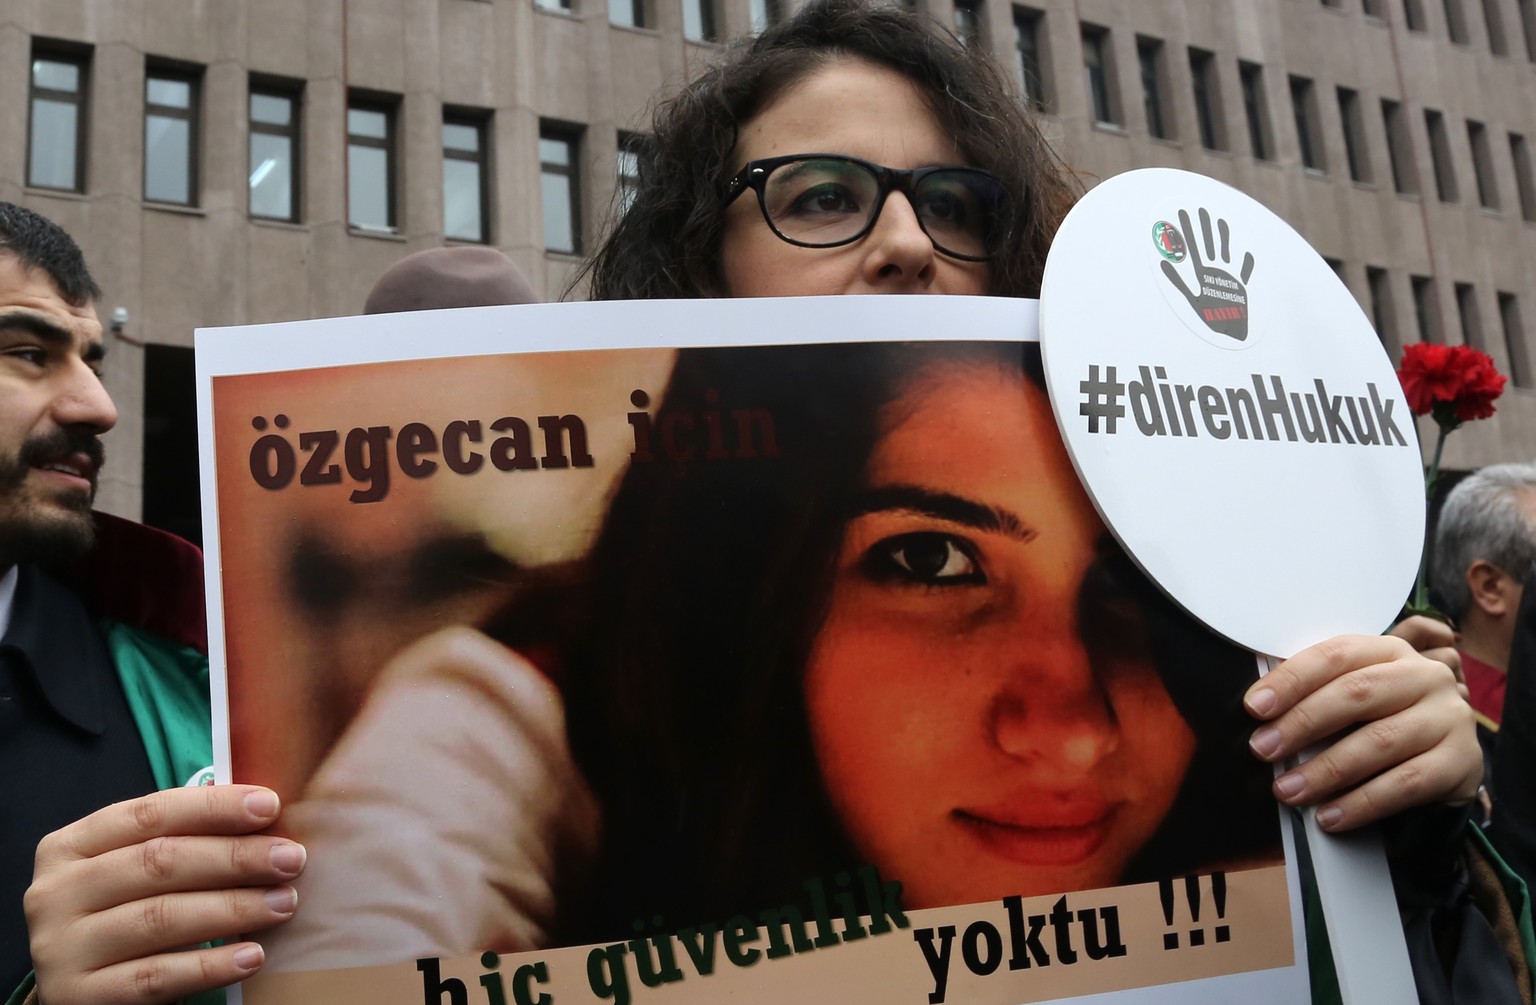 Der Tod der Studentin hatte in der ganzen Türkei grosse Empörung und Demonstrationen gegen die anhaltende Gewalt gegen Frauen ausgelöst.&nbsp;